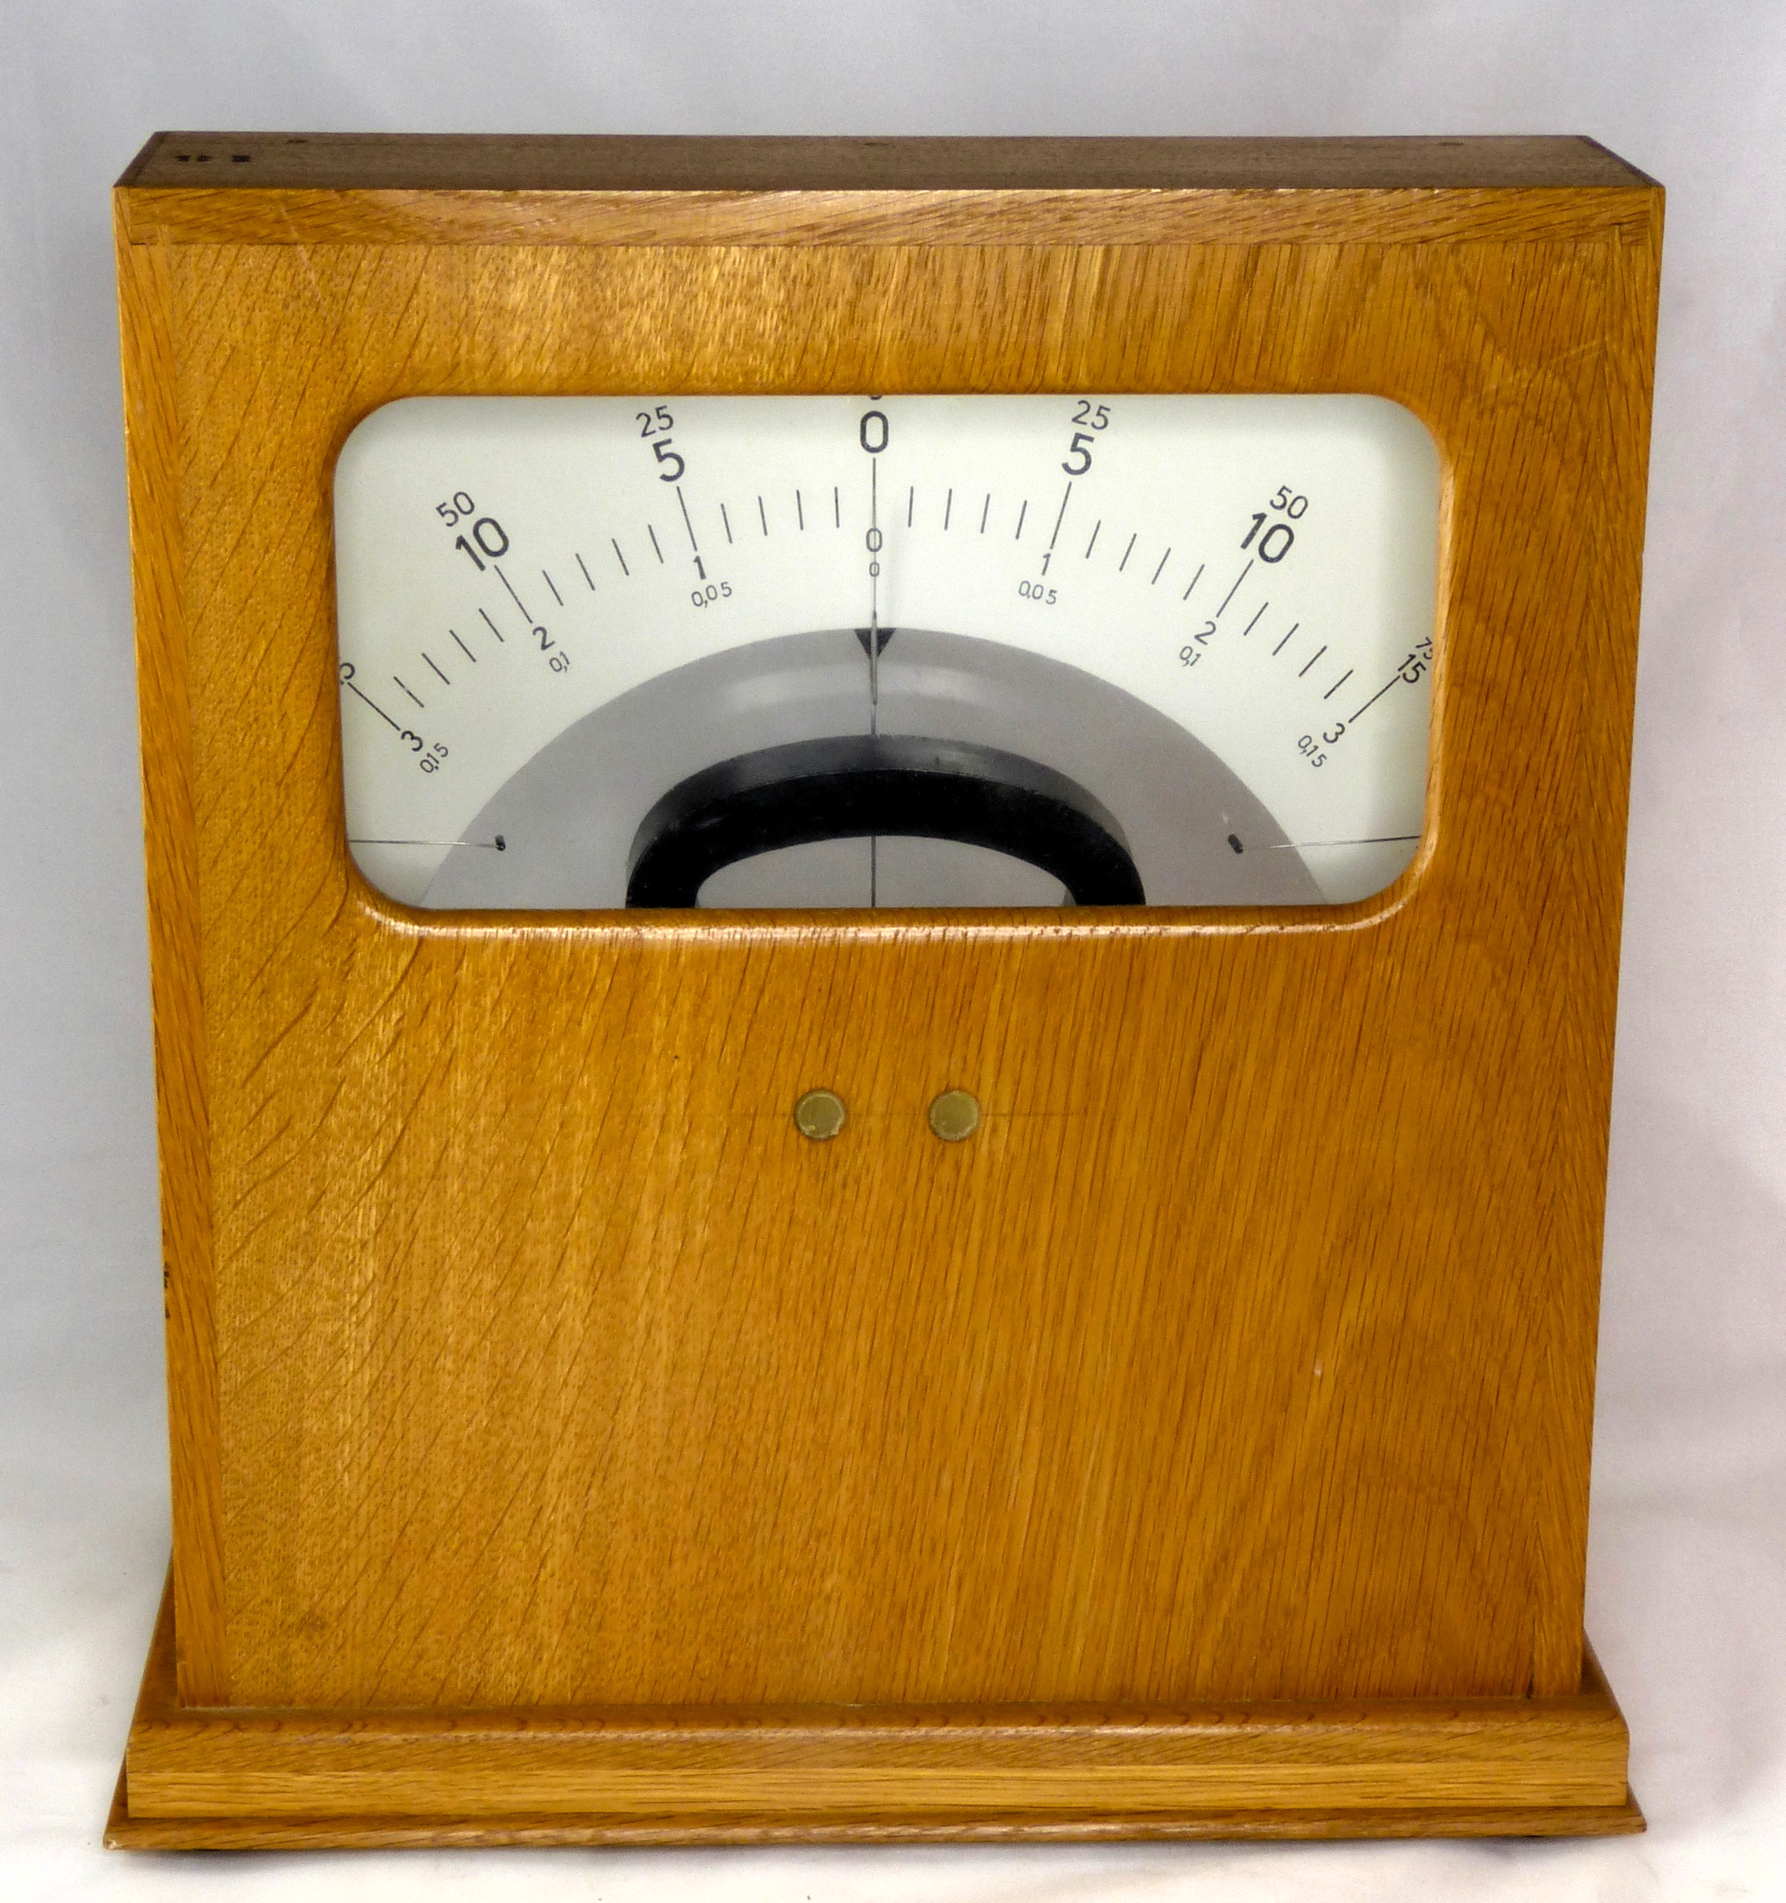 Voltmètre de démonstration
(plusieurs gammes, zéro centré)